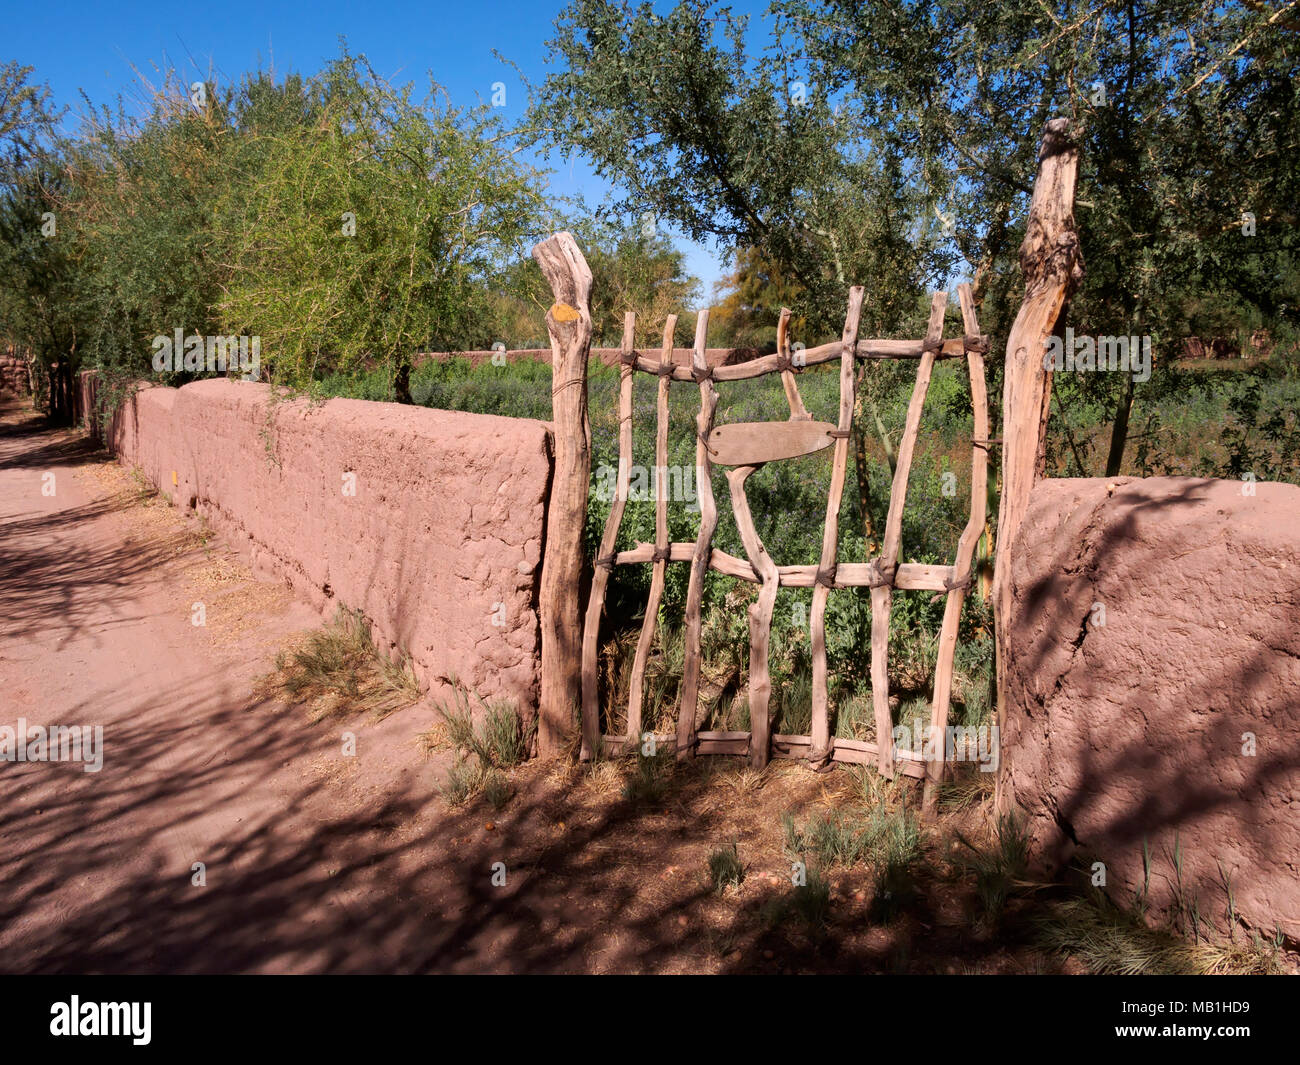 Adobe walls and a wooden gate enclose a field of Alfalfa, San Pedro de Atacama, Chile Stock Photo